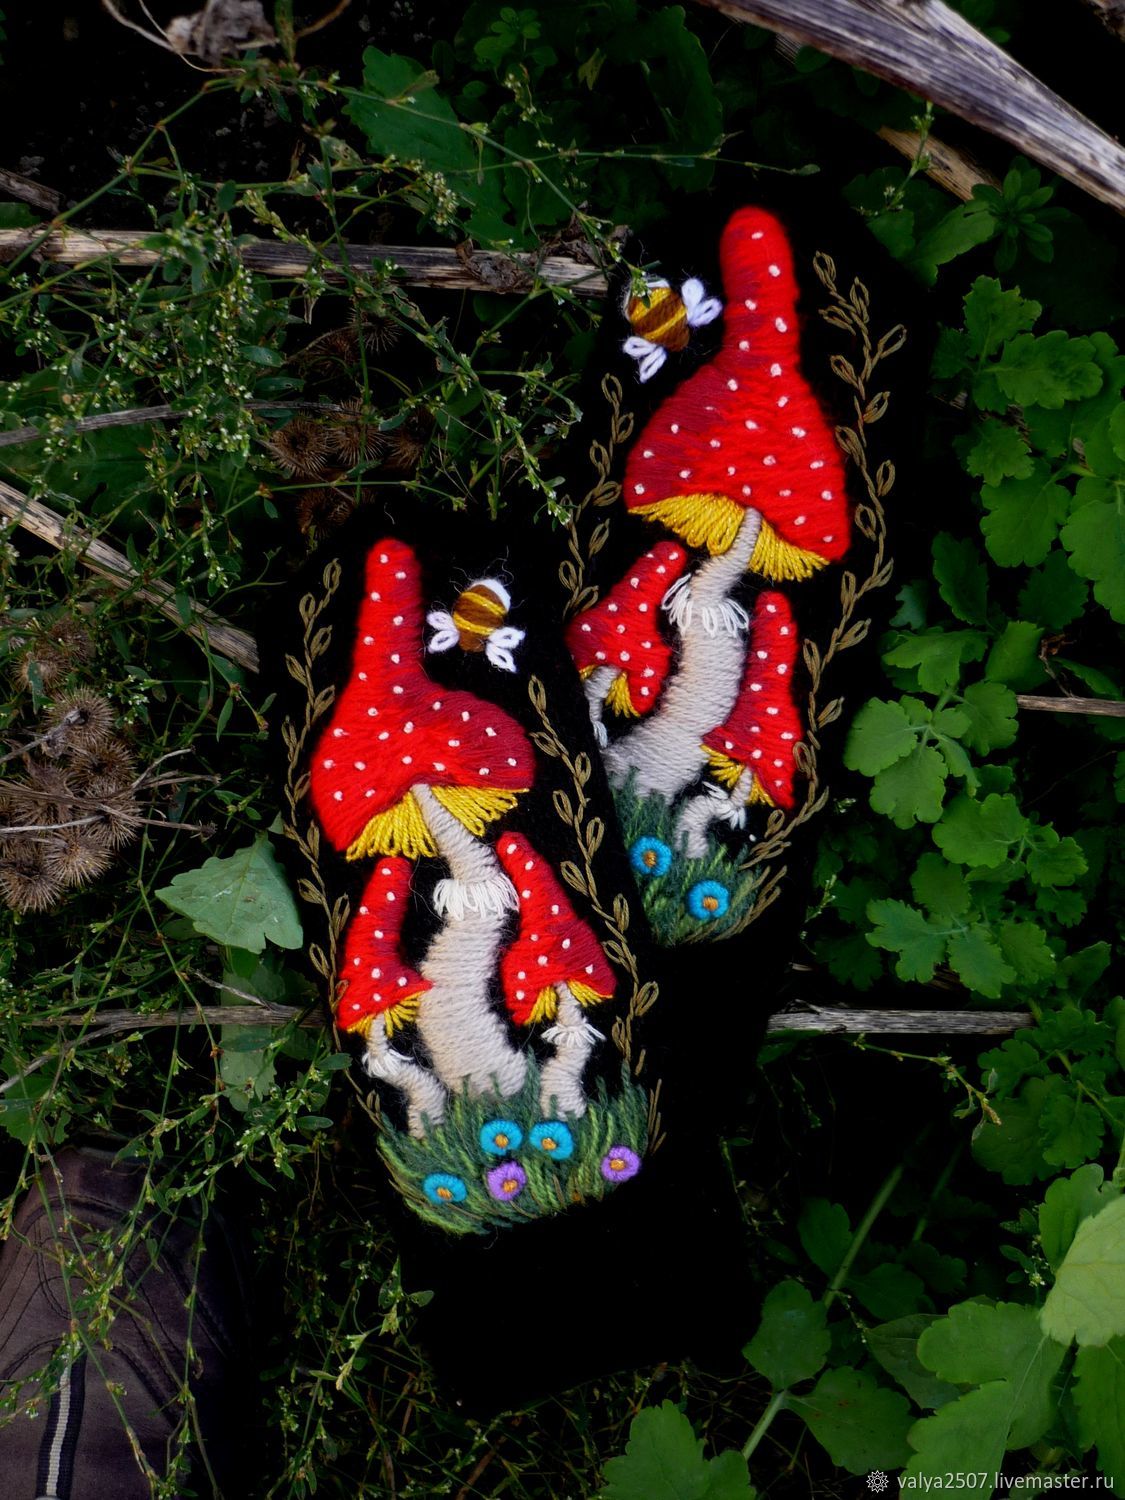  ' mushroom', Mittens, Gribanovsky,  Фото №1